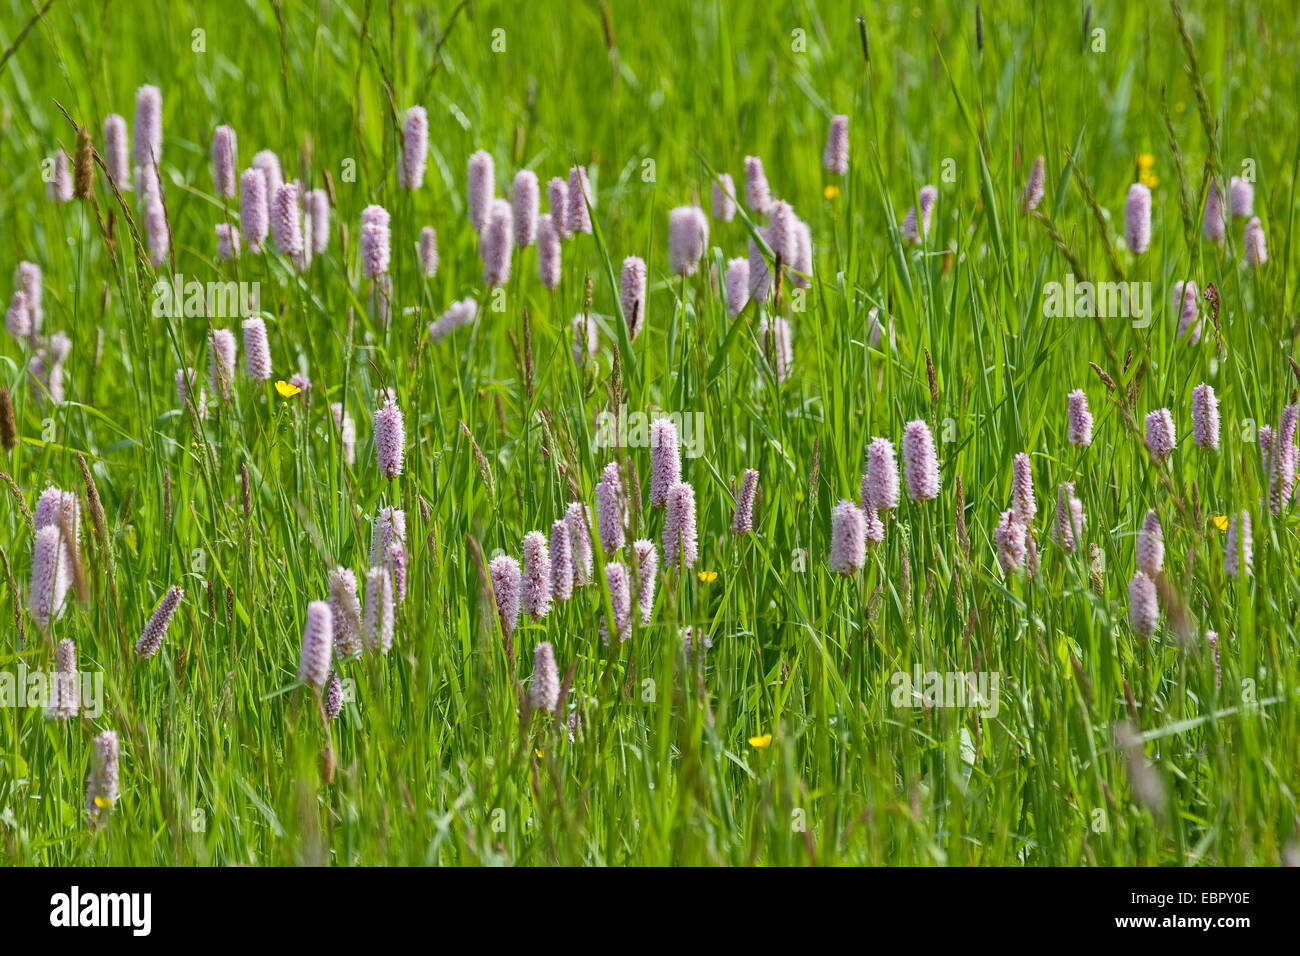 Common bistort, Meadow bistort (Polygonum bistorta, Bistorta officinalis, Bistorta major, Persicaria bistorta), blooming in a meadow, Germany Stock Photo